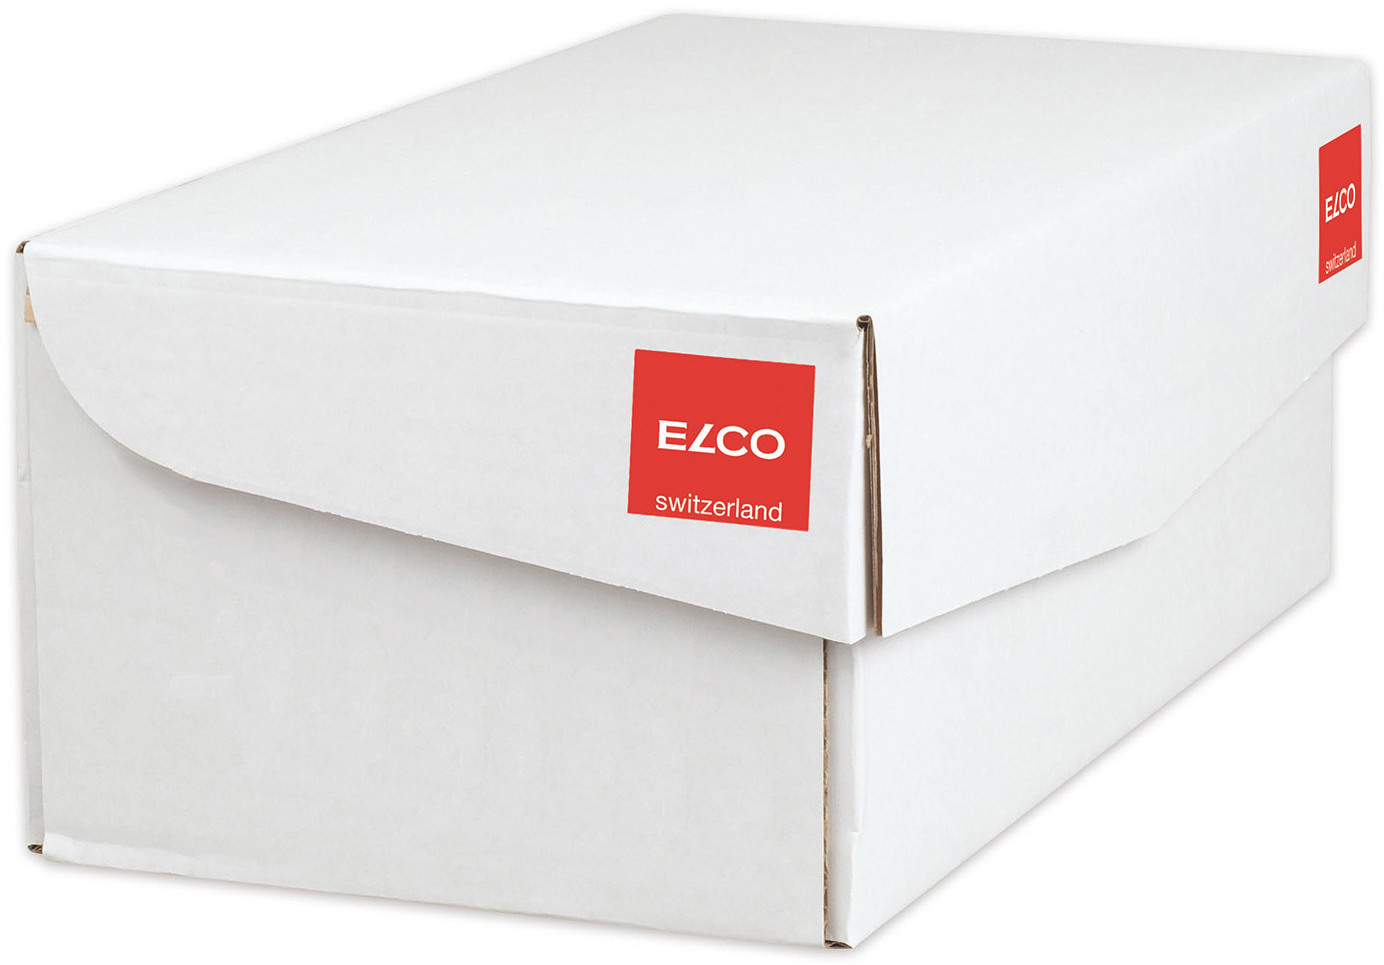 ELCO Enveloppe Color s/fenêtre C6 18832.92 100g, rouge 250 pcs.